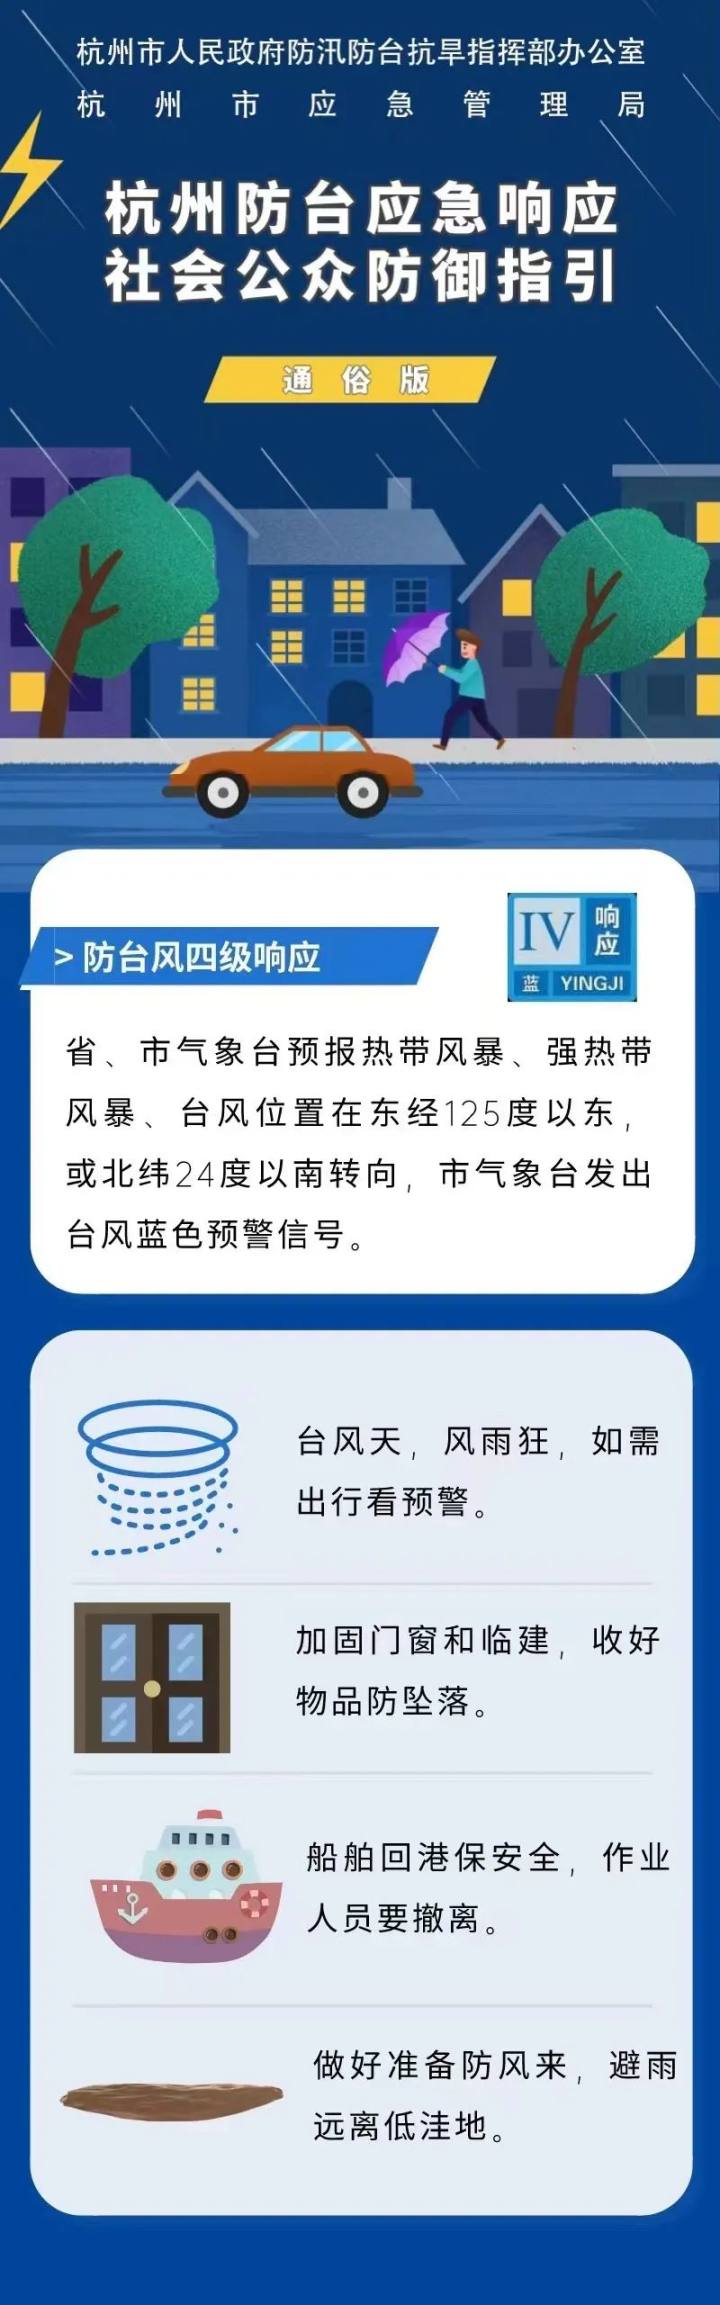 杭州启动防台风Ⅳ级应急响应